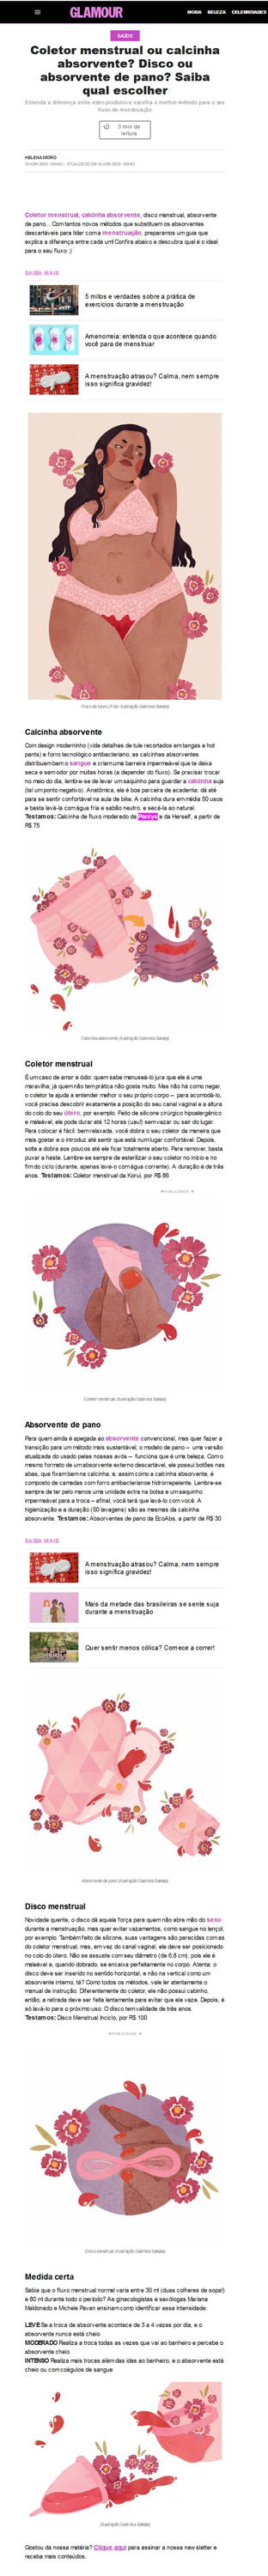 Pagina revista digital com ilustrações sobre menstruação 